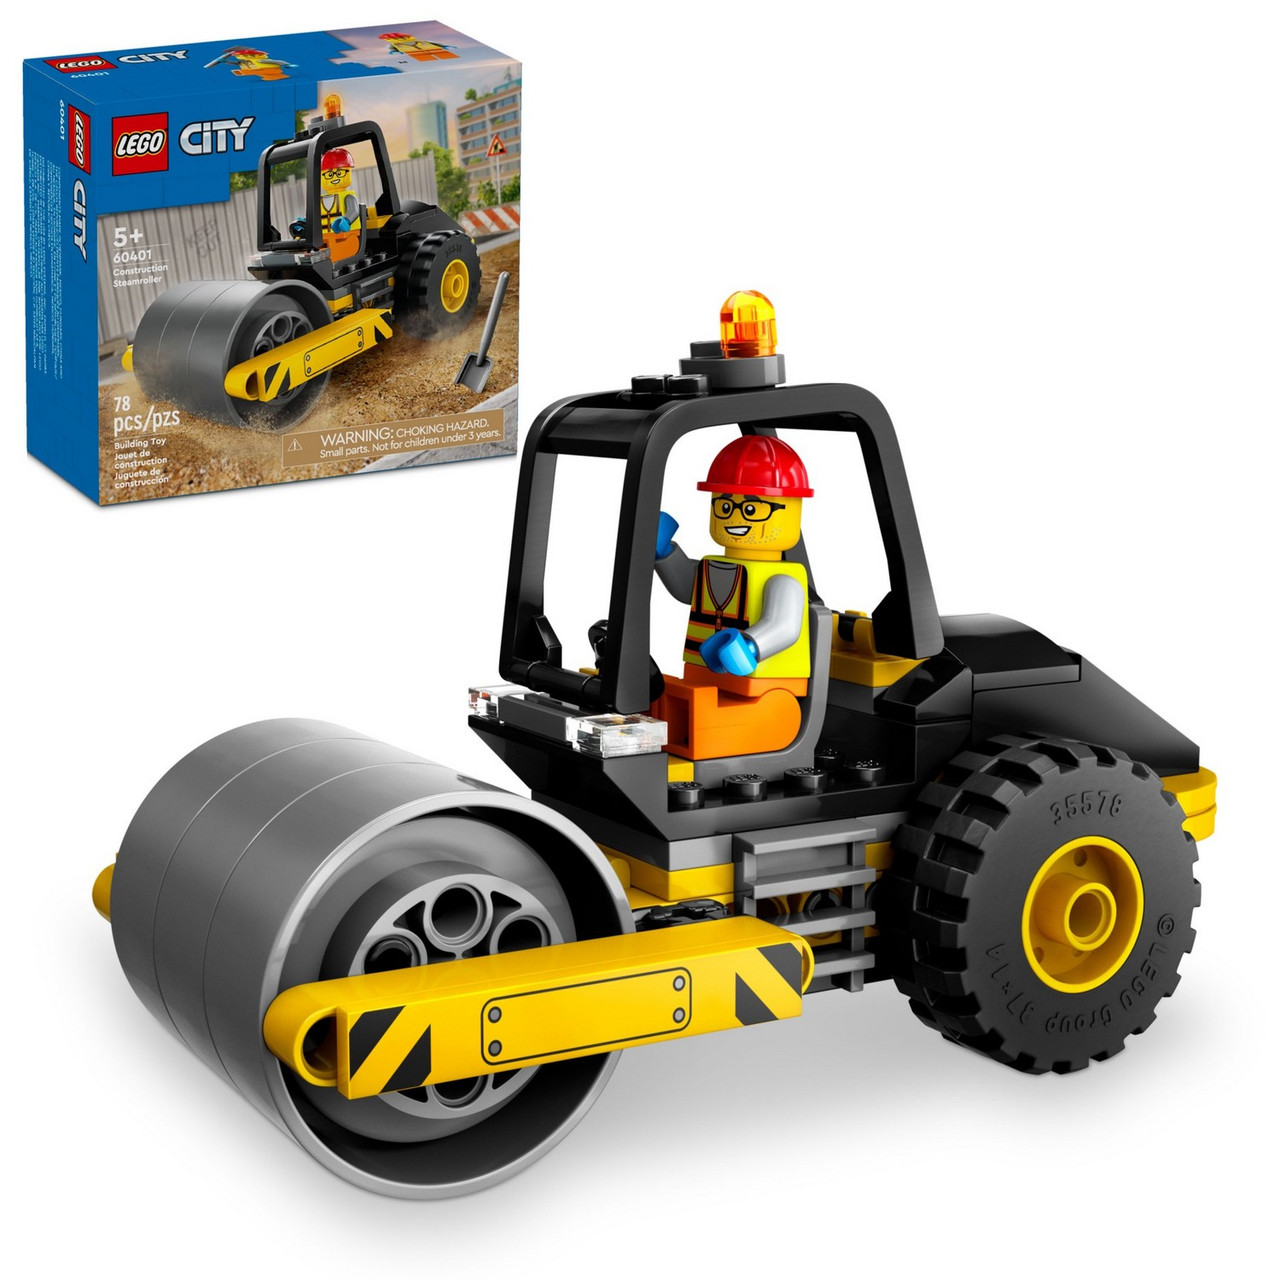 Lego 60401 Город троительный каток